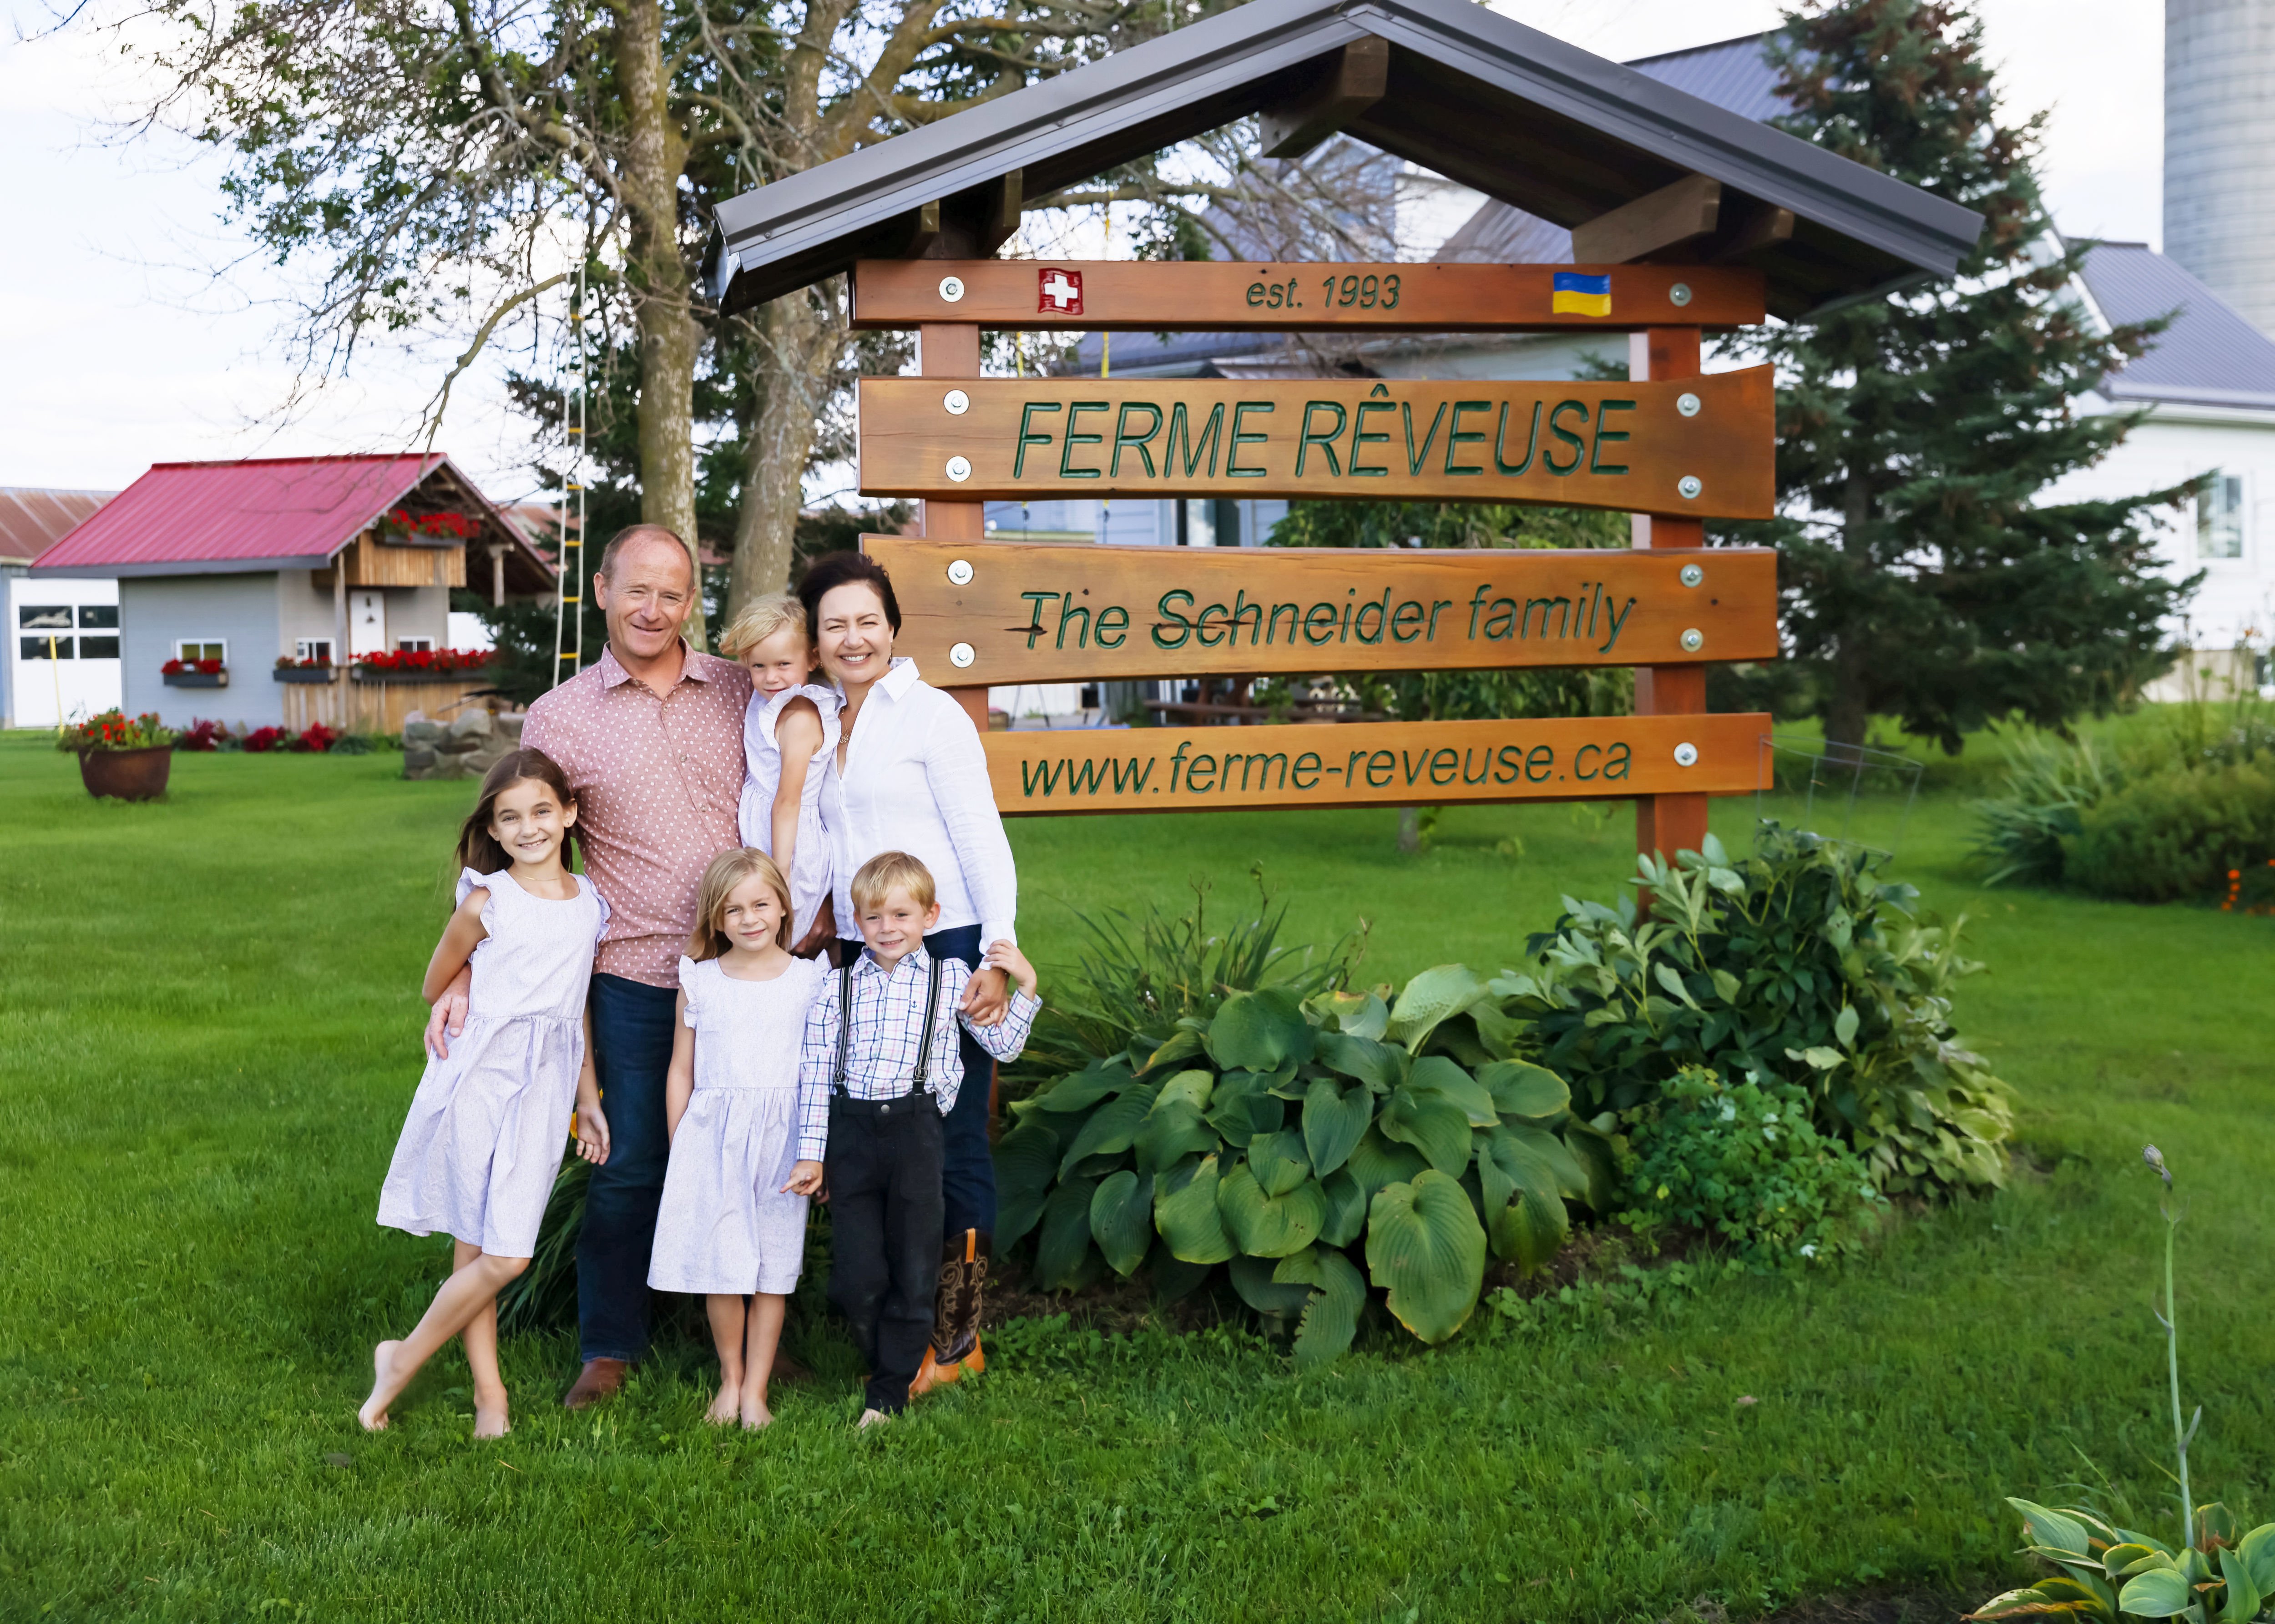 Les propriétaires Kornel et Olga Schneider et leurs quatre enfants devant un panneau en bois portant le nom de leur ferme, leur site web, leur histoire et leur origines.